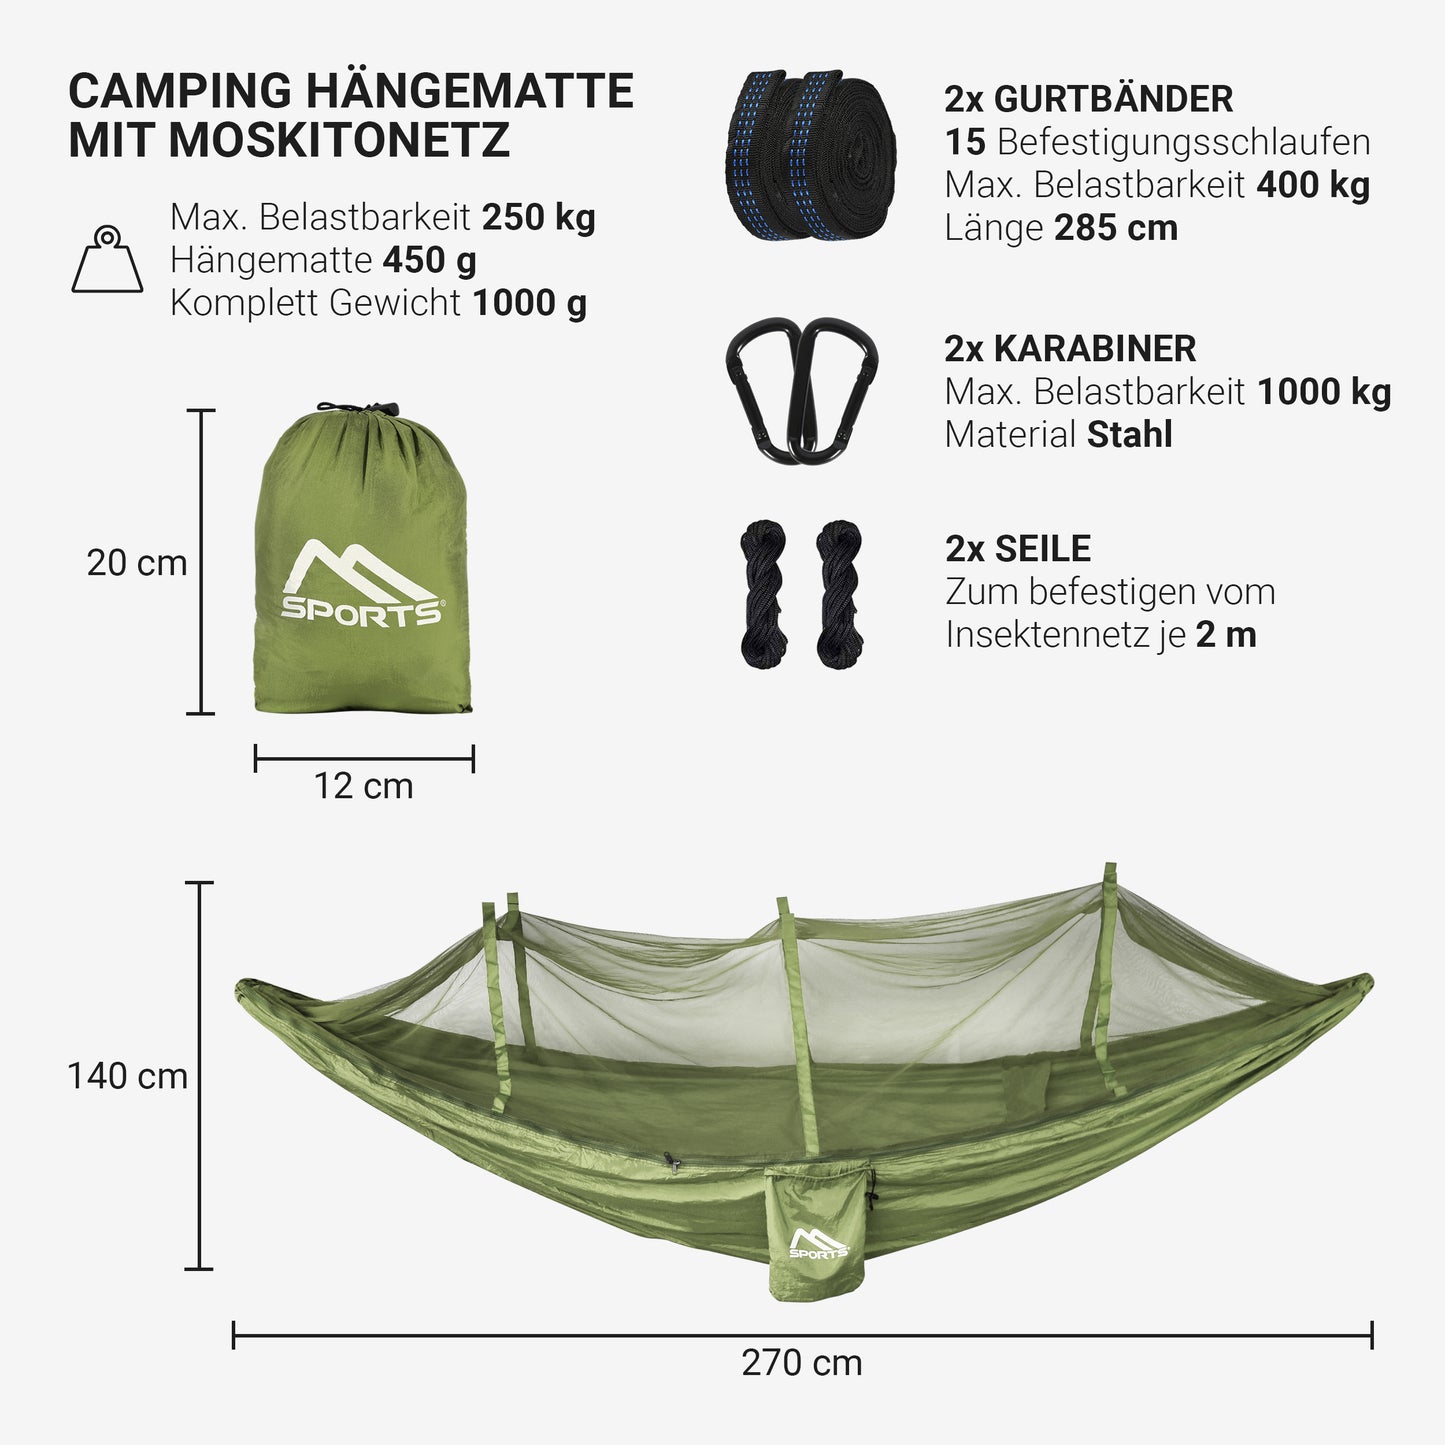 Camping Hängematte